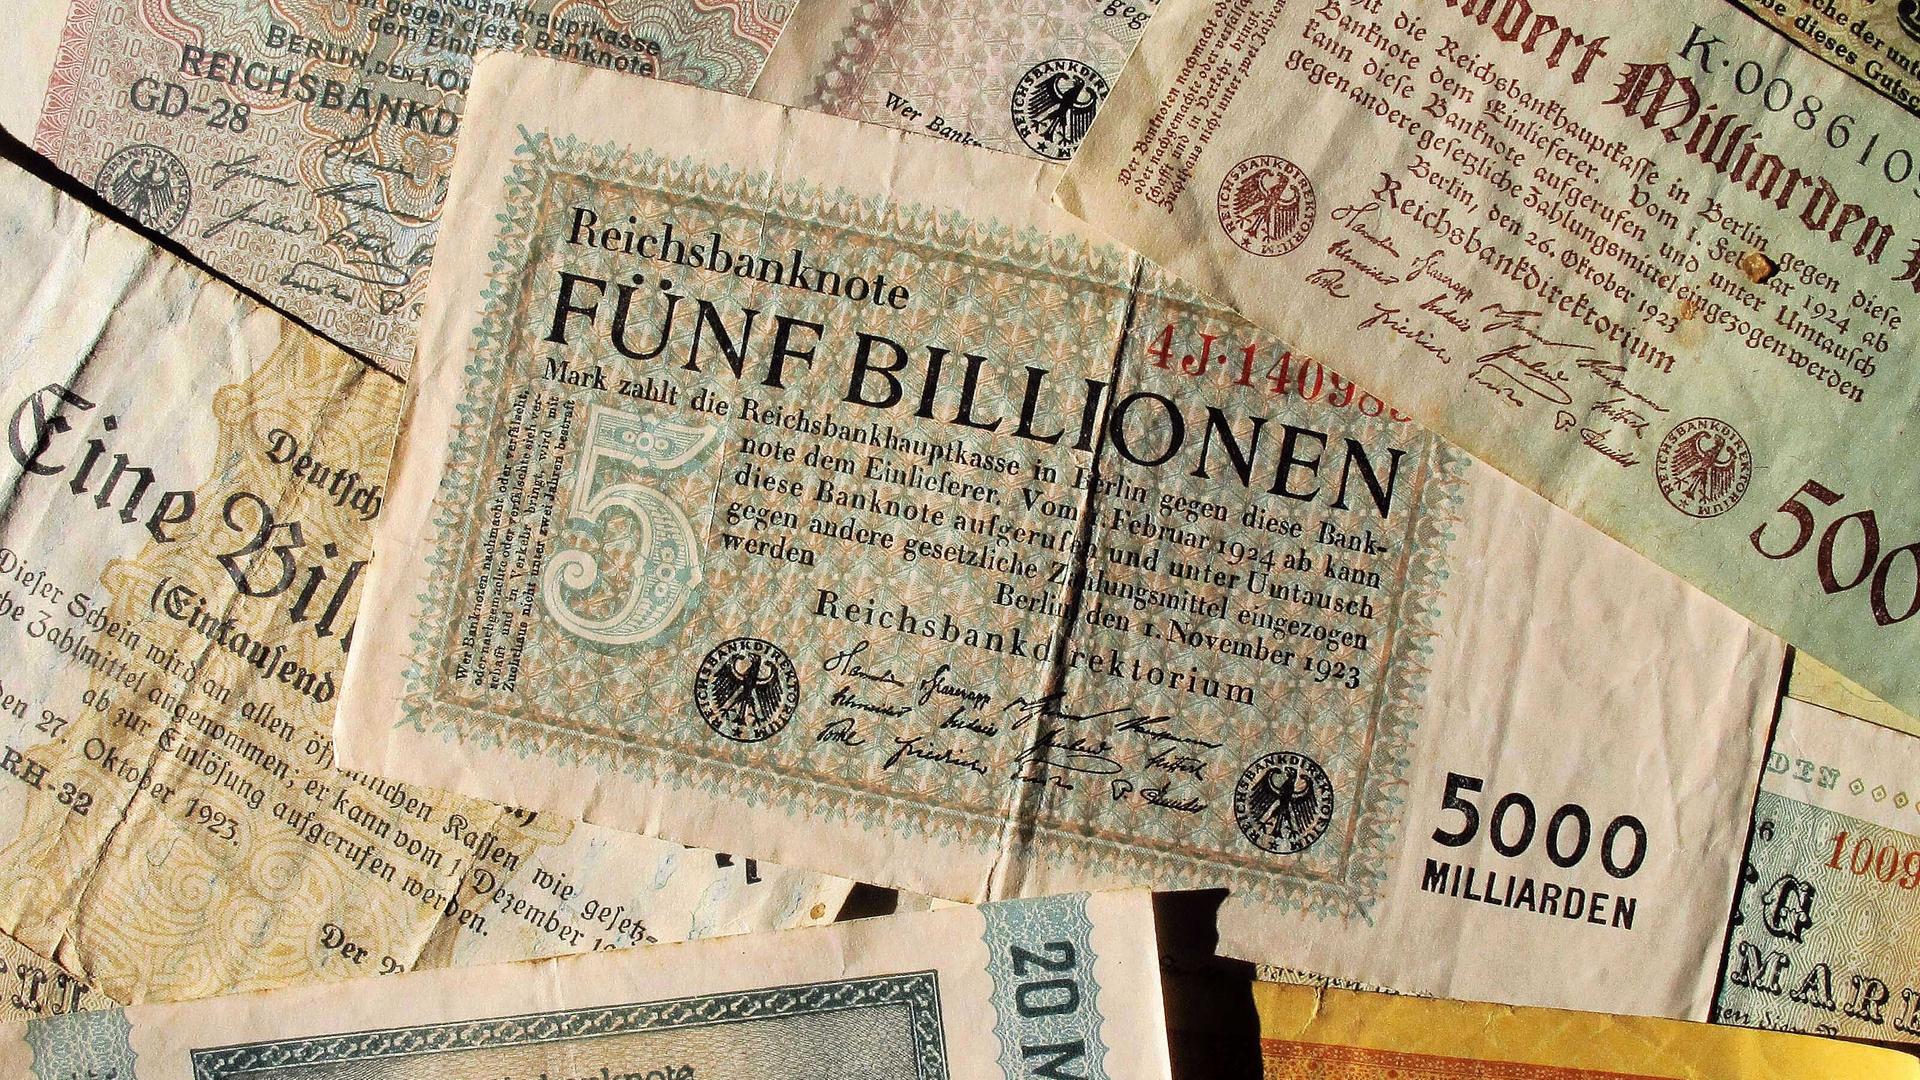 Eine Reichsbanknote über Fünf Billionen Mark vom November 1923 und andere Banknoten über 20 Milliarden Mark, 500 Milliatrden Mark u.a vornehmlich 1923 von der Deutschen Reichsbank ausgegeben, aufgenommen am 22.10.2011. Foto: A. Engelhardt